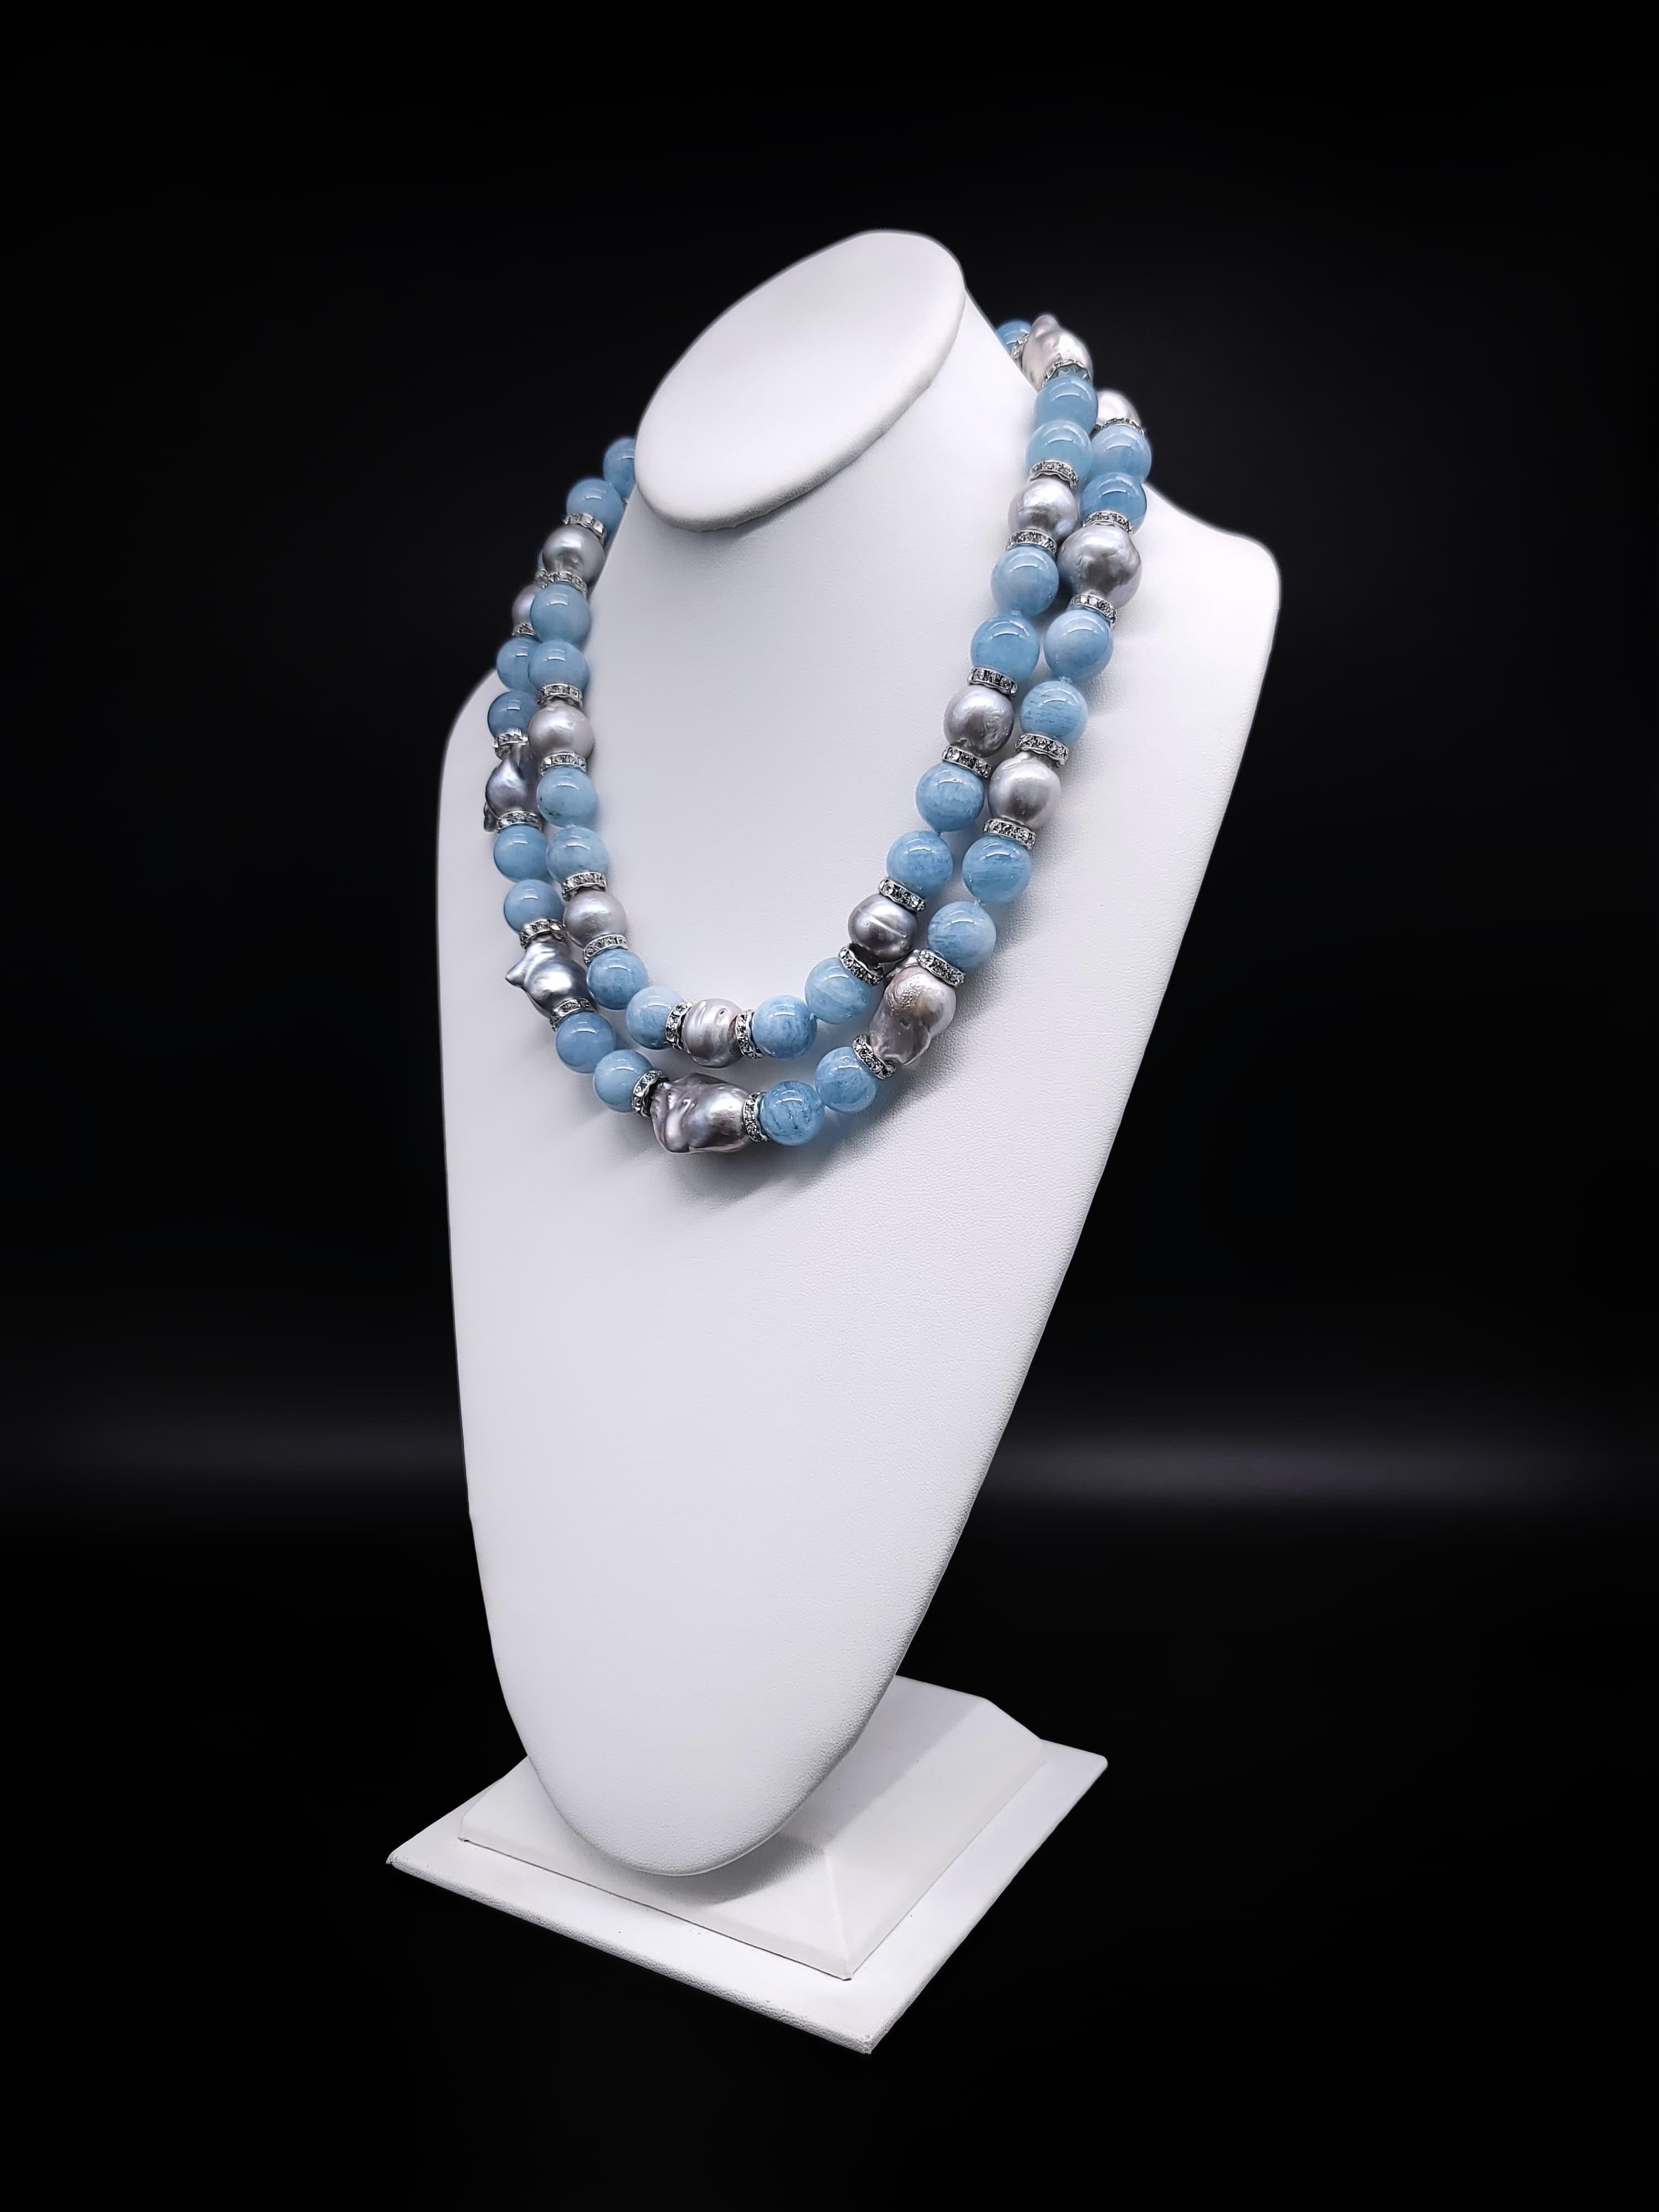 Exquisite Harmonie:

Entdecken Sie die außergewöhnliche Synergie von blassblauen, durchscheinenden Aquamarinen (15-16 mm) und glänzenden grauen Barockperlen (16 mm) in dieser außergewöhnlichen zweisträngigen Halskette, die mit CZ-Rondellen in